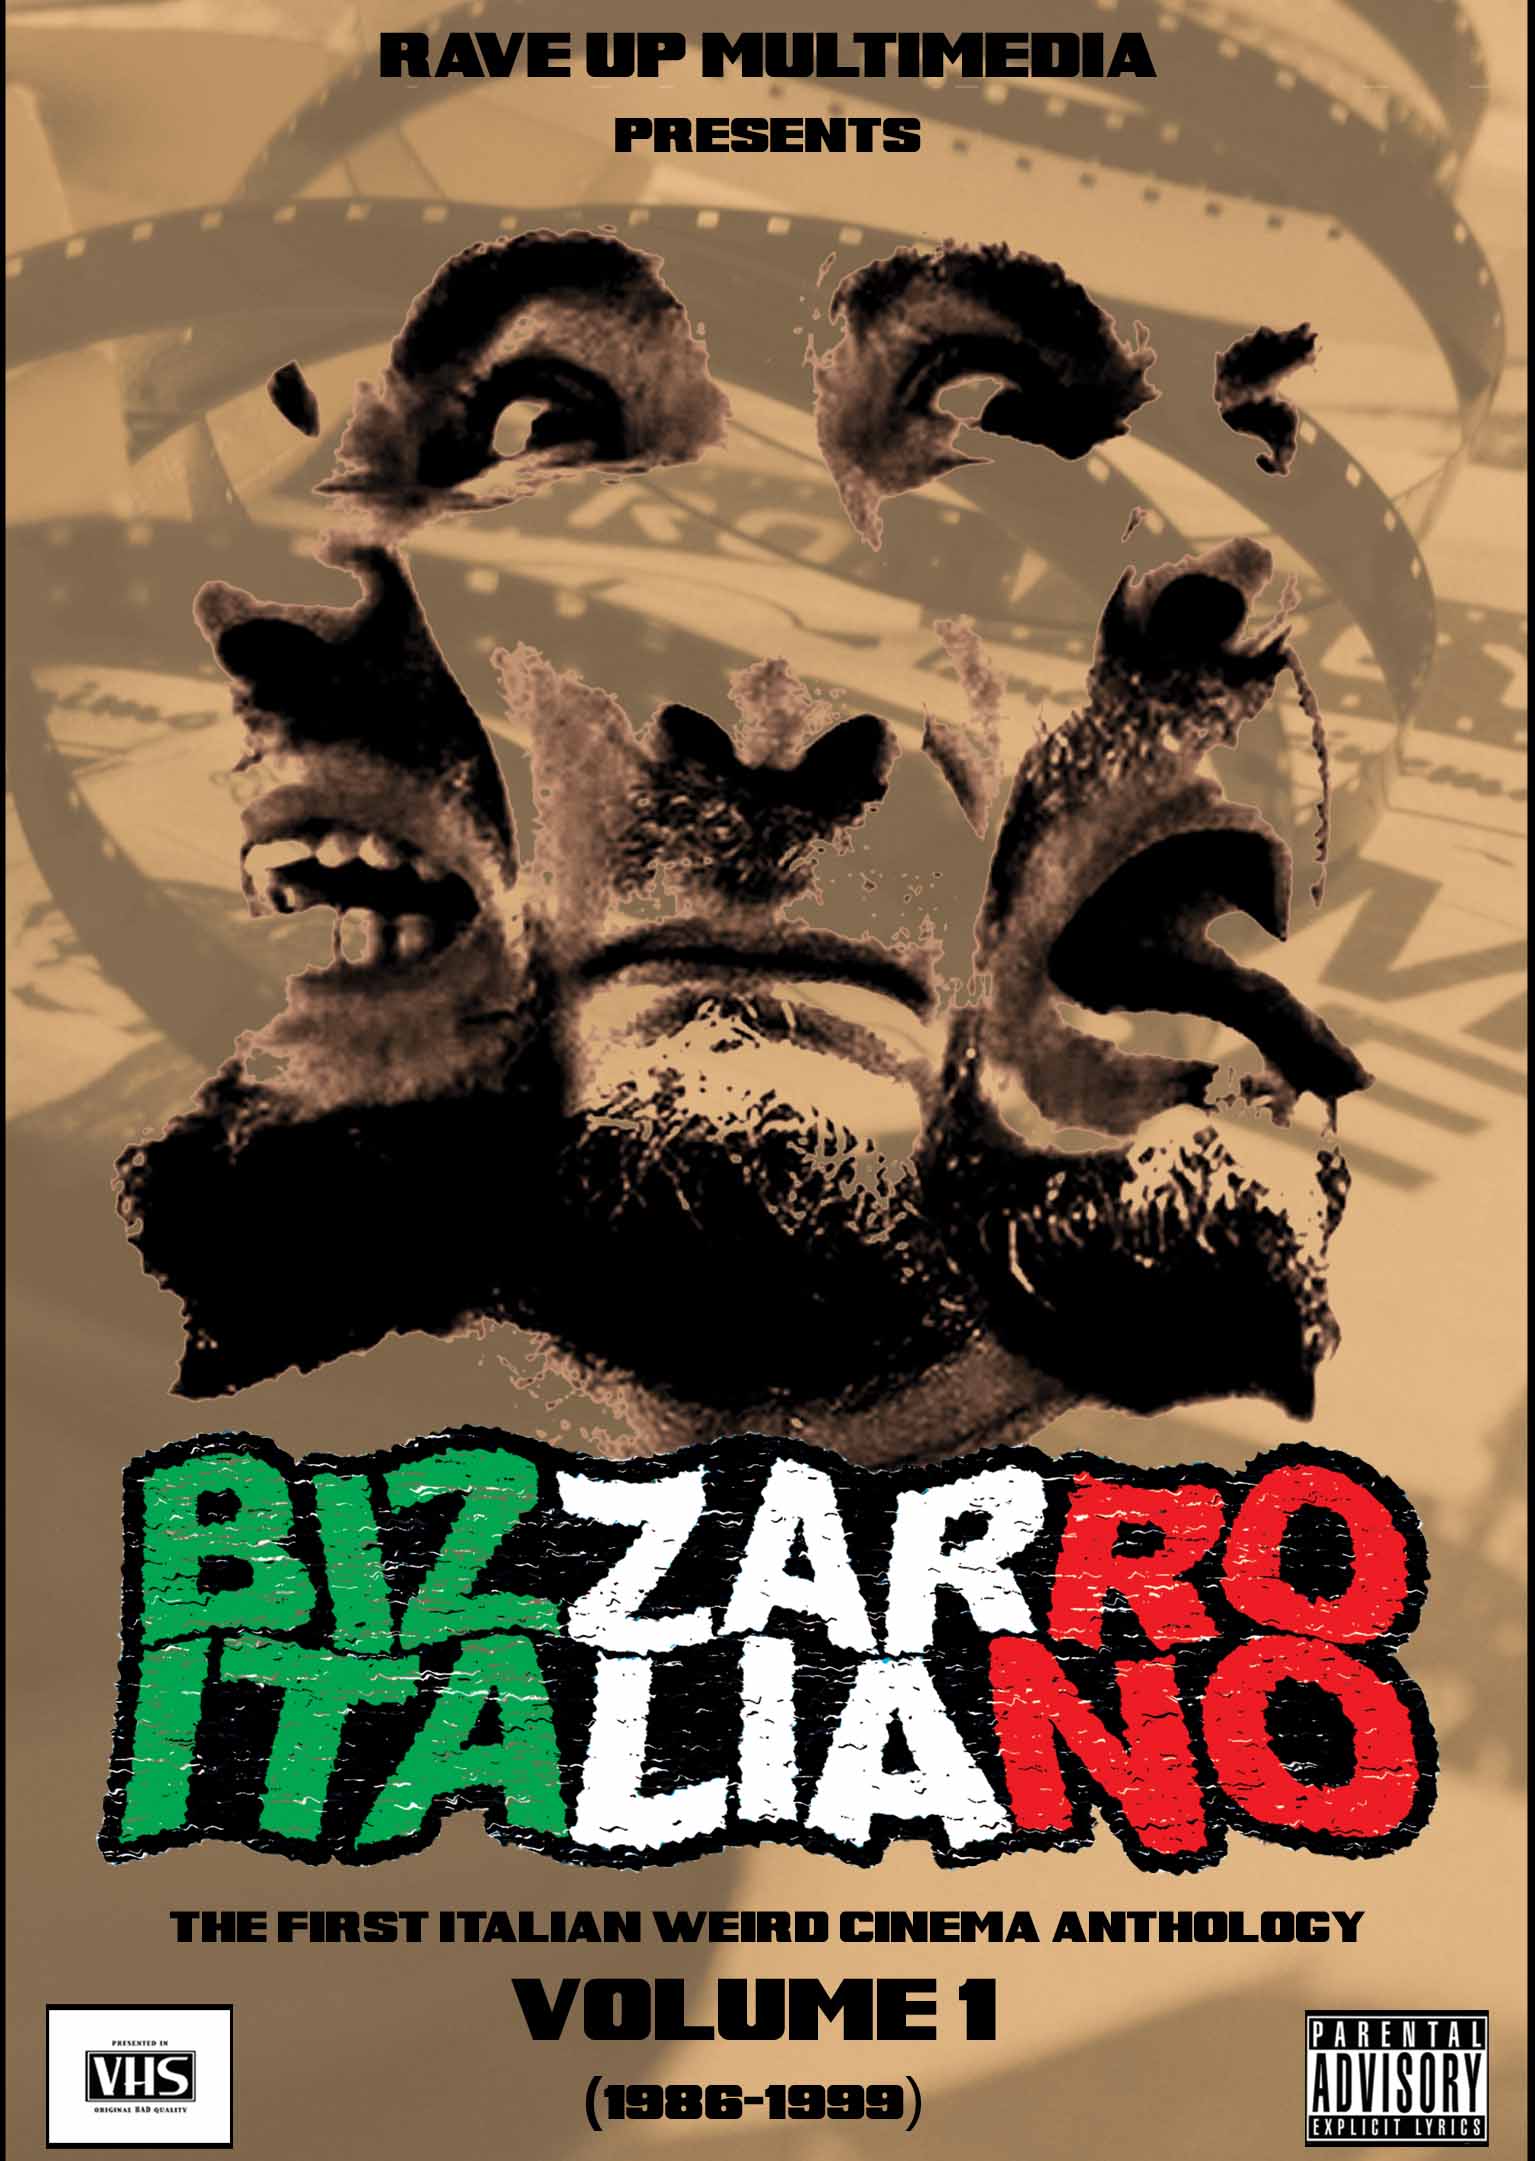 BIZZARRO_ITALIANO_FRONT